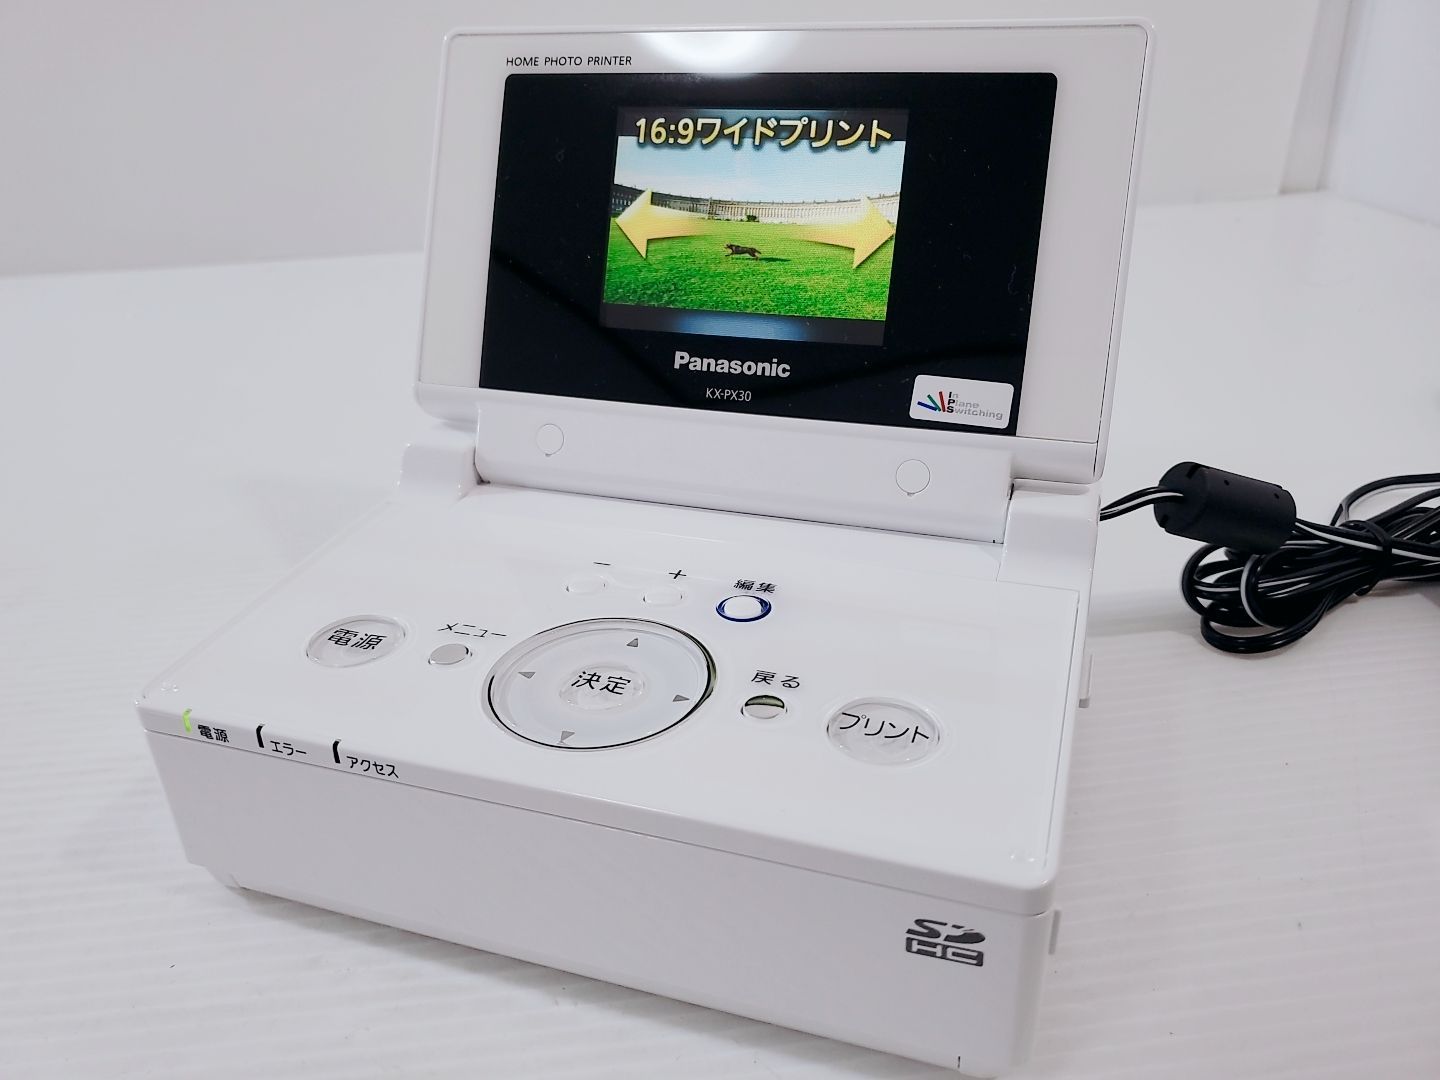 美品】Panasonic ホームフォトプリンター KX-PX30 モニター - テレビ/映像機器